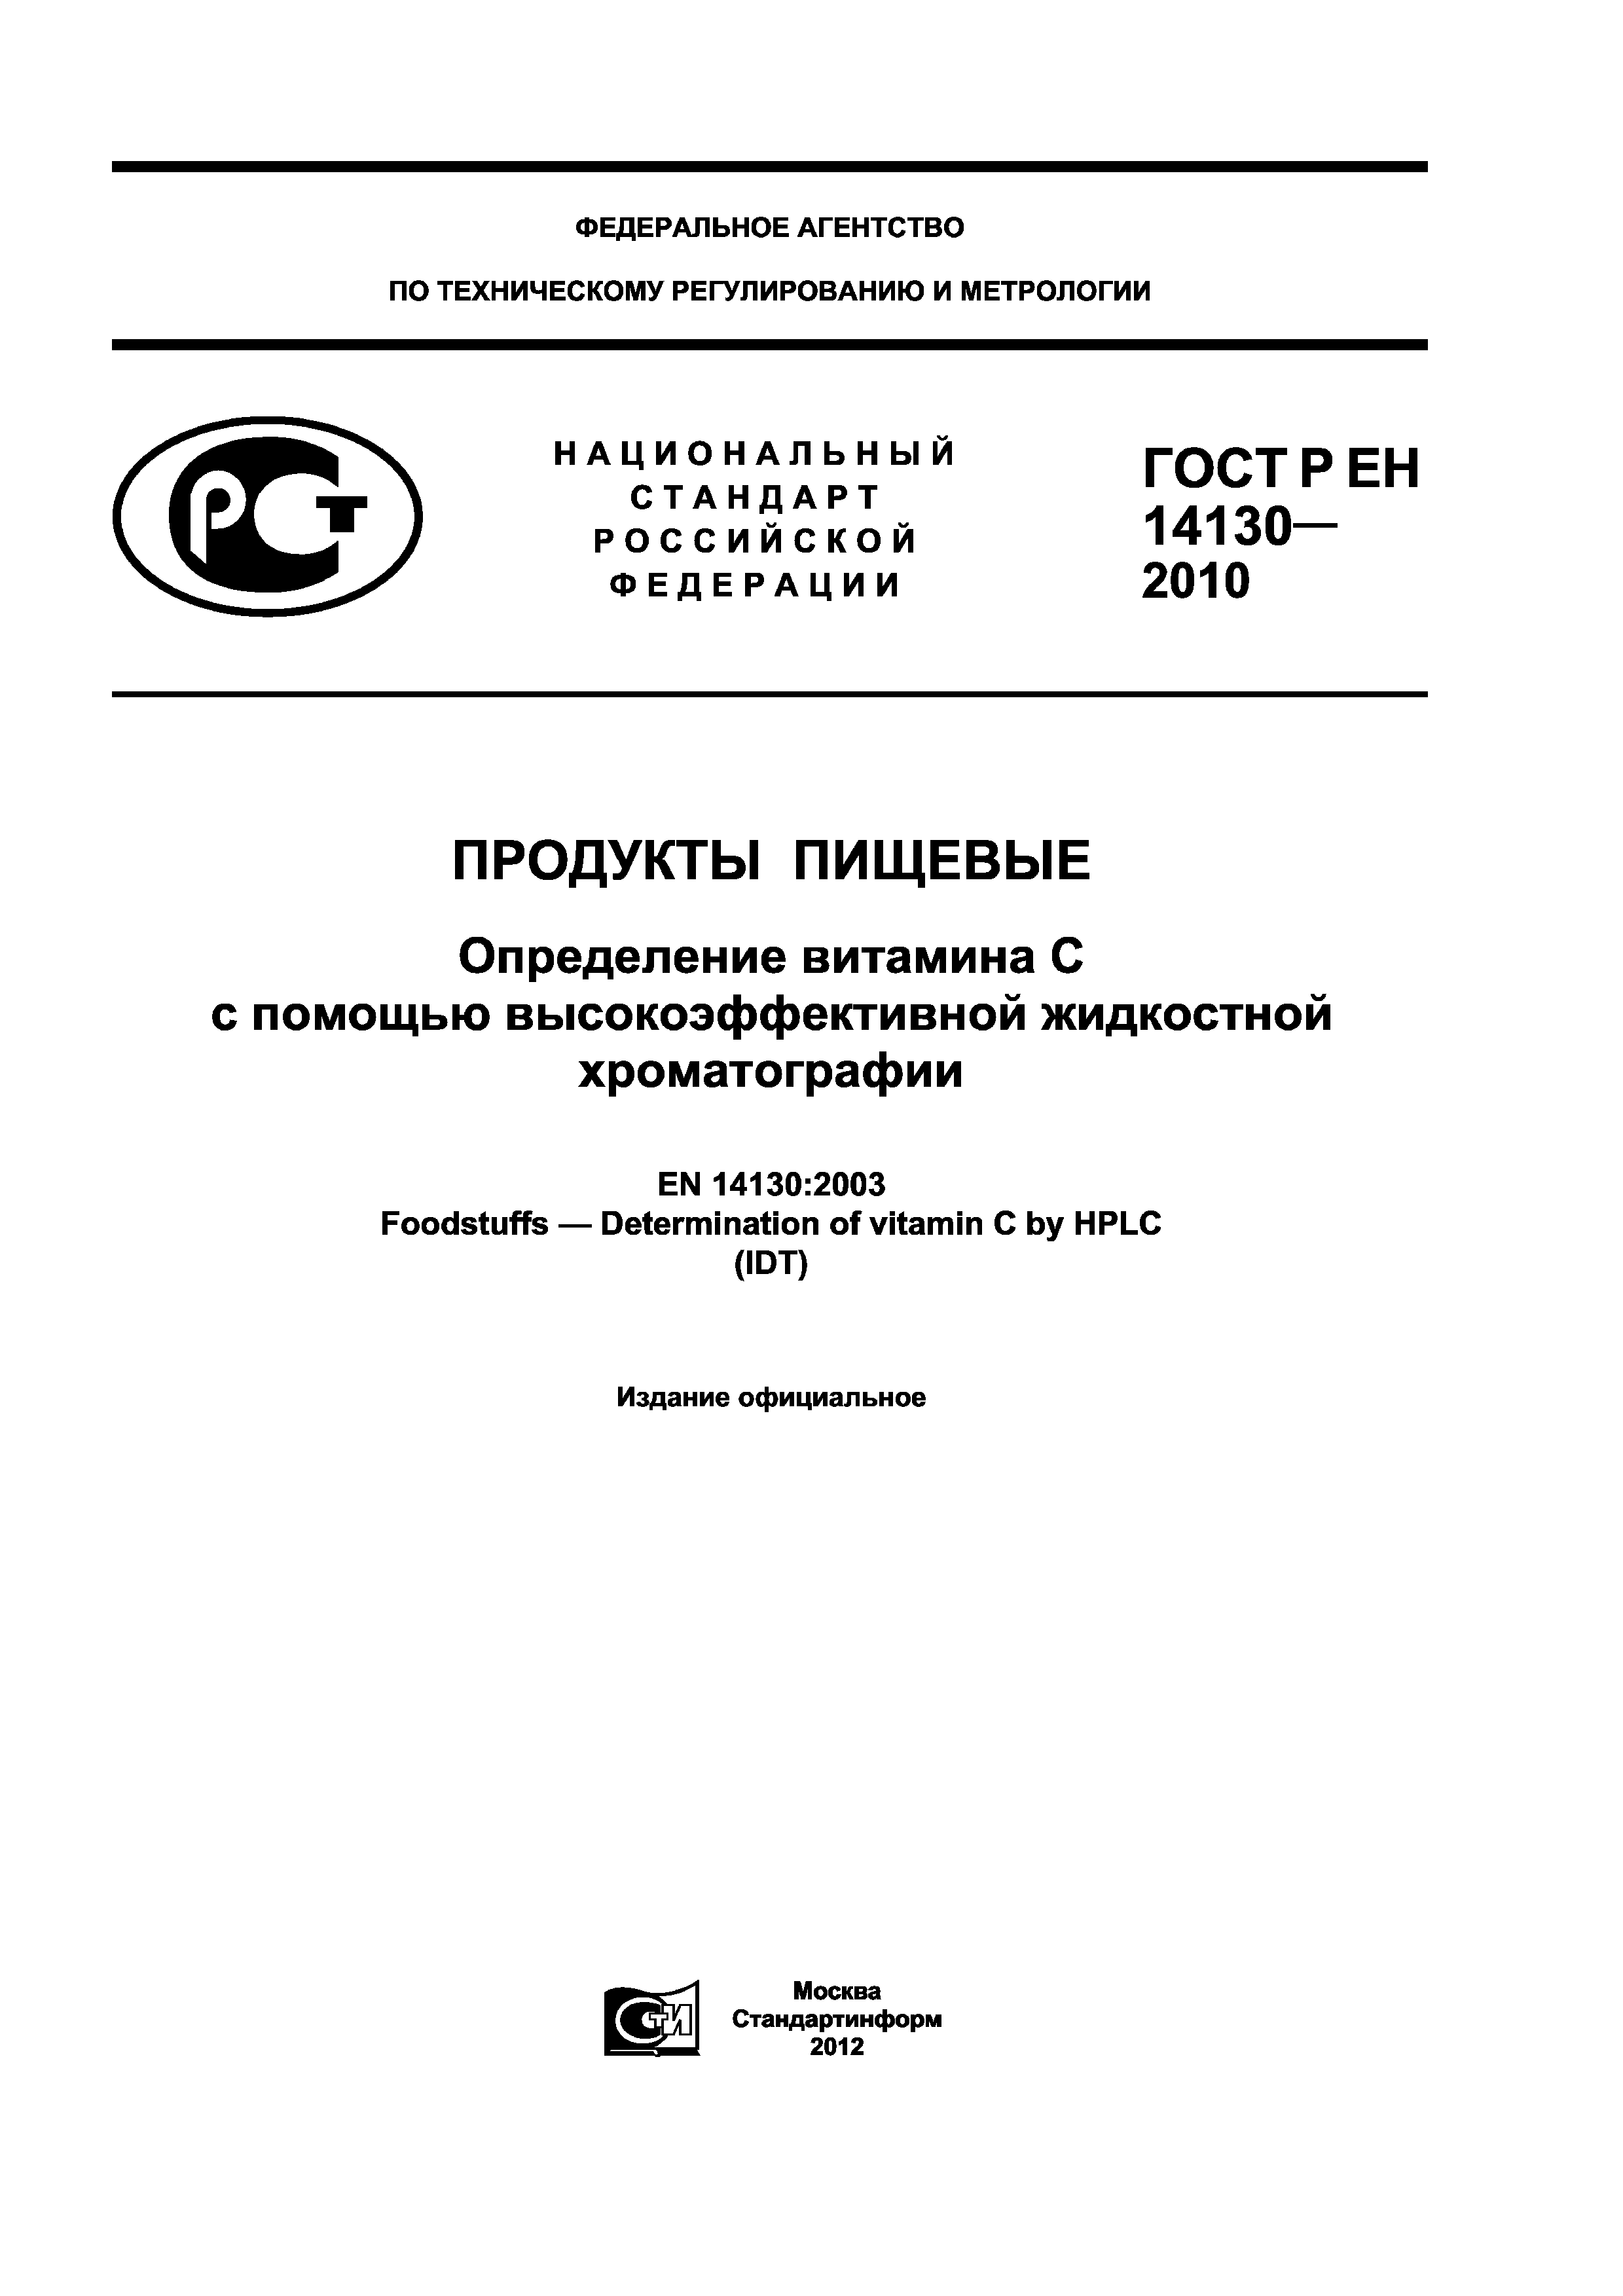 ГОСТ Р ЕН 14130-2010